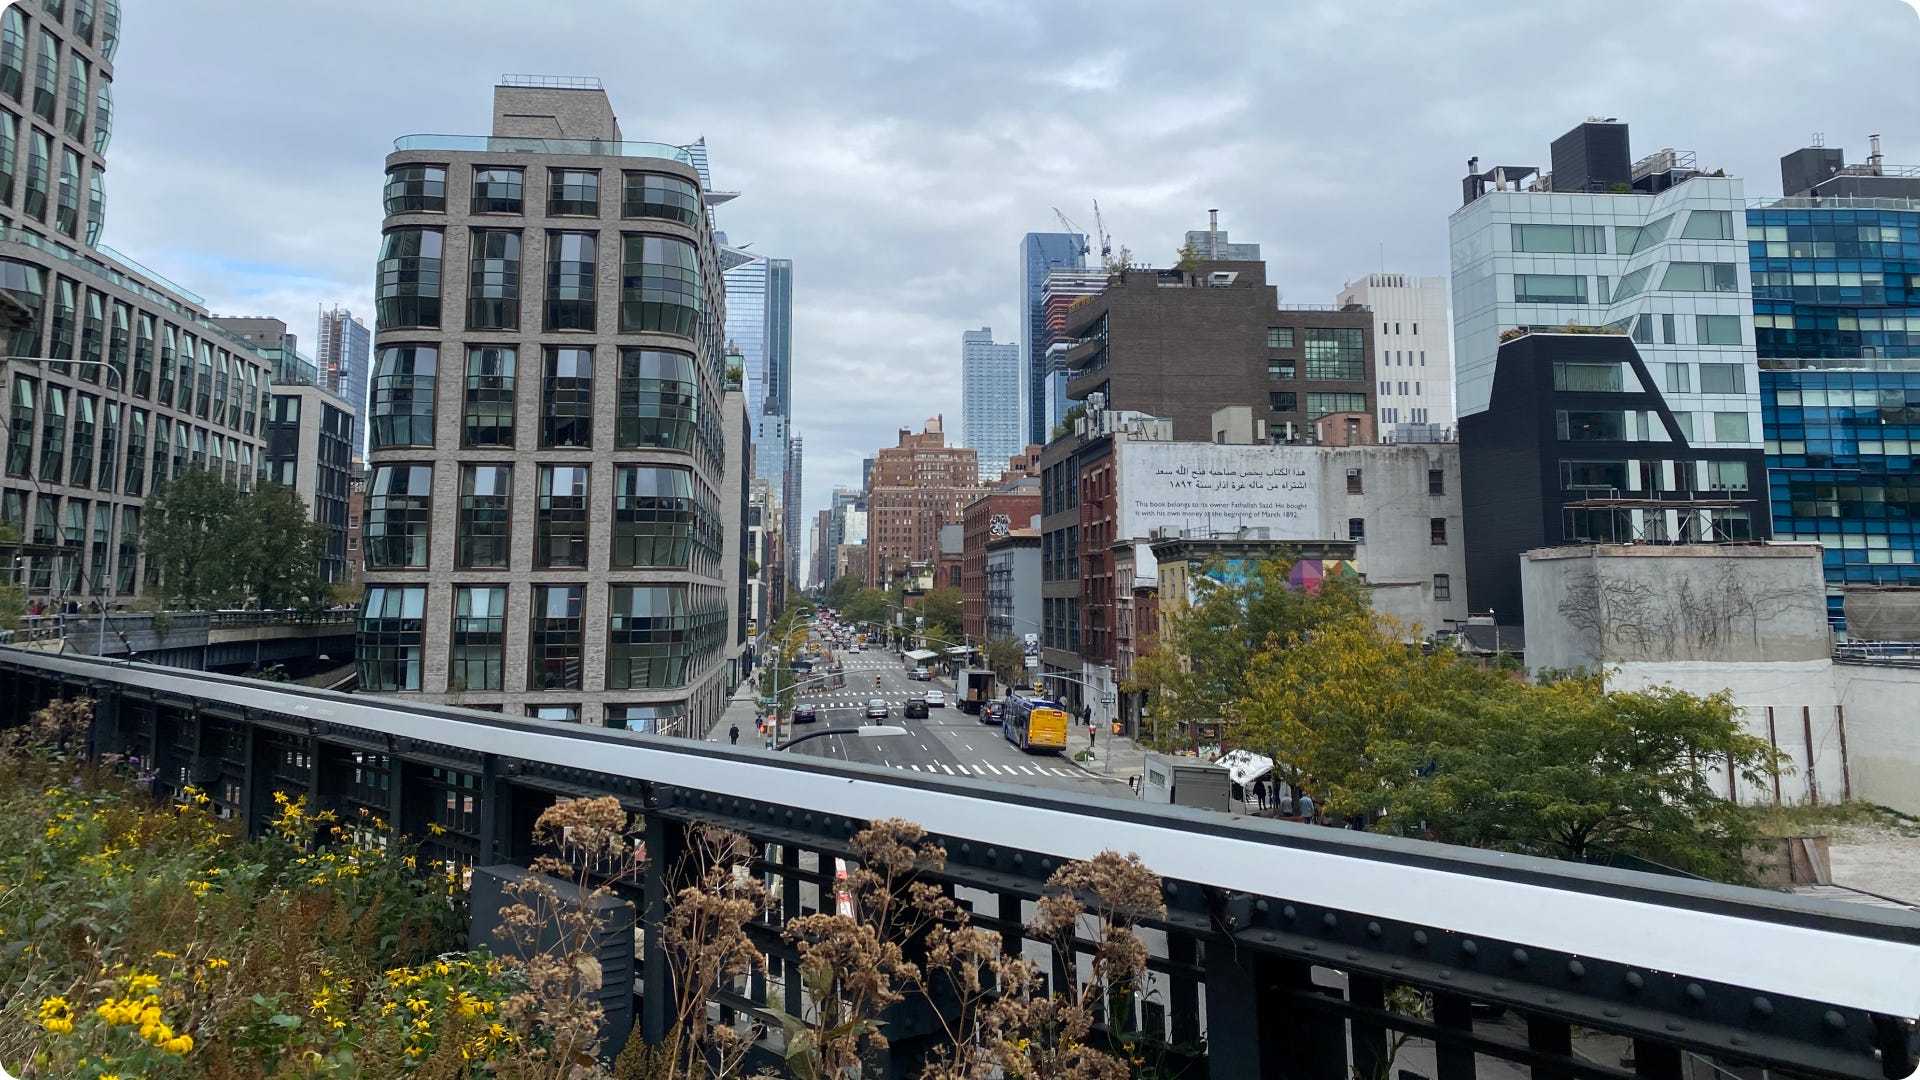 The Highline in New York